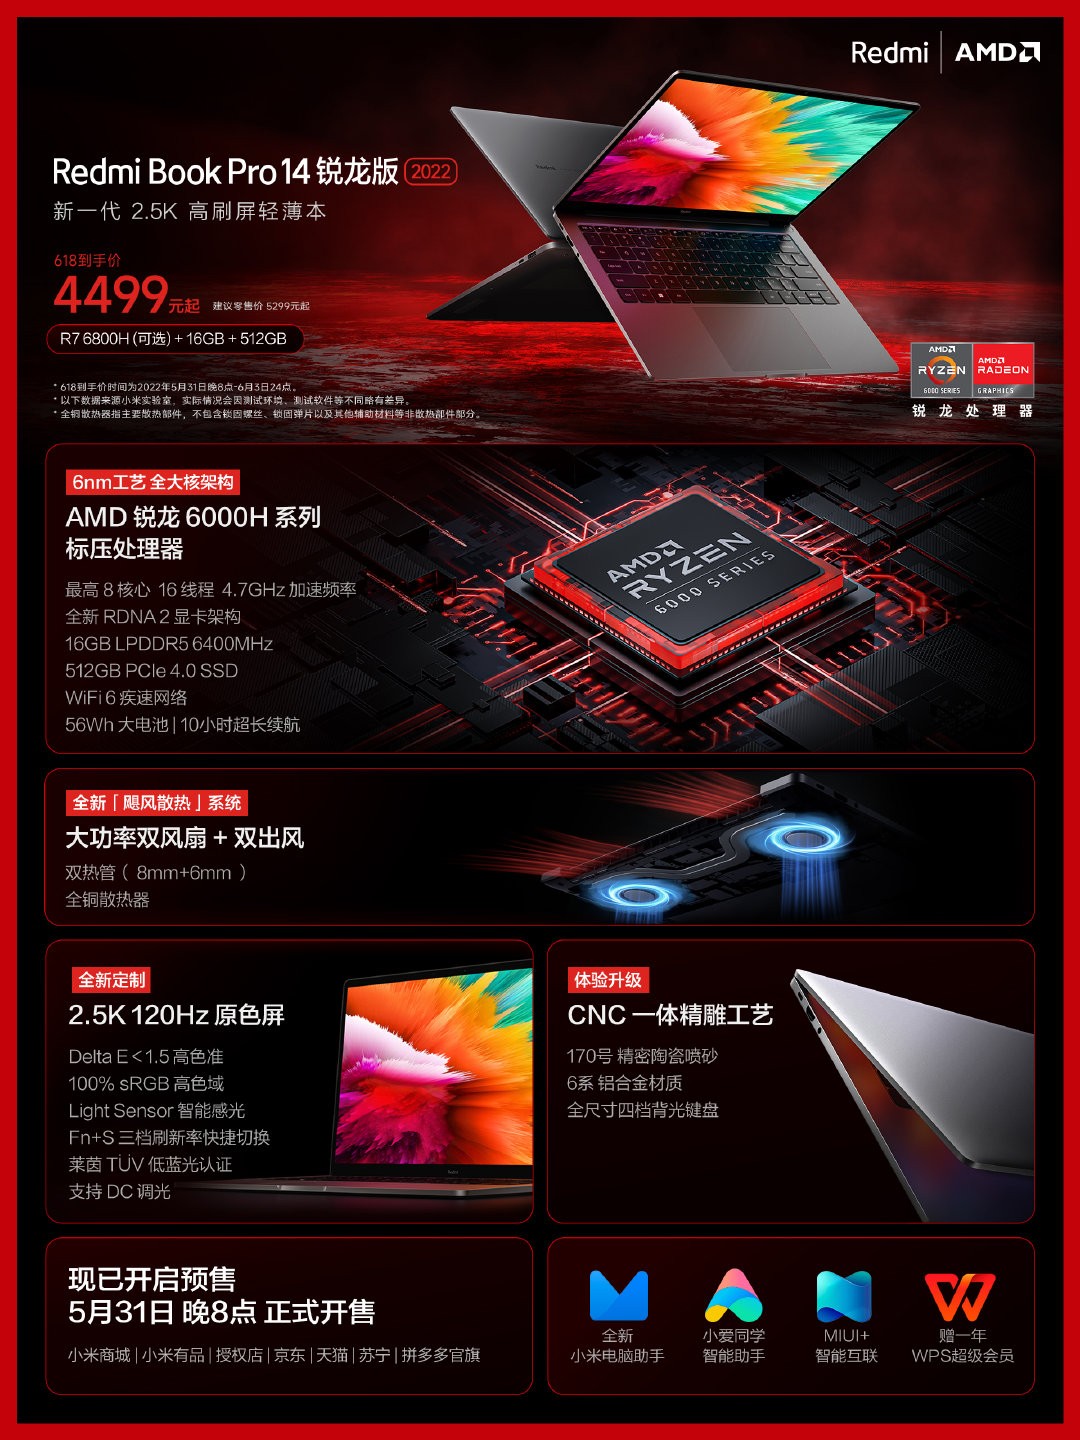 تم الكشف عن أجهزة كمبيوتر محمولة مقاس 14 بوصة و 15.6 بوصة من إصدار RedmiBook Pro 2022 Ryzen